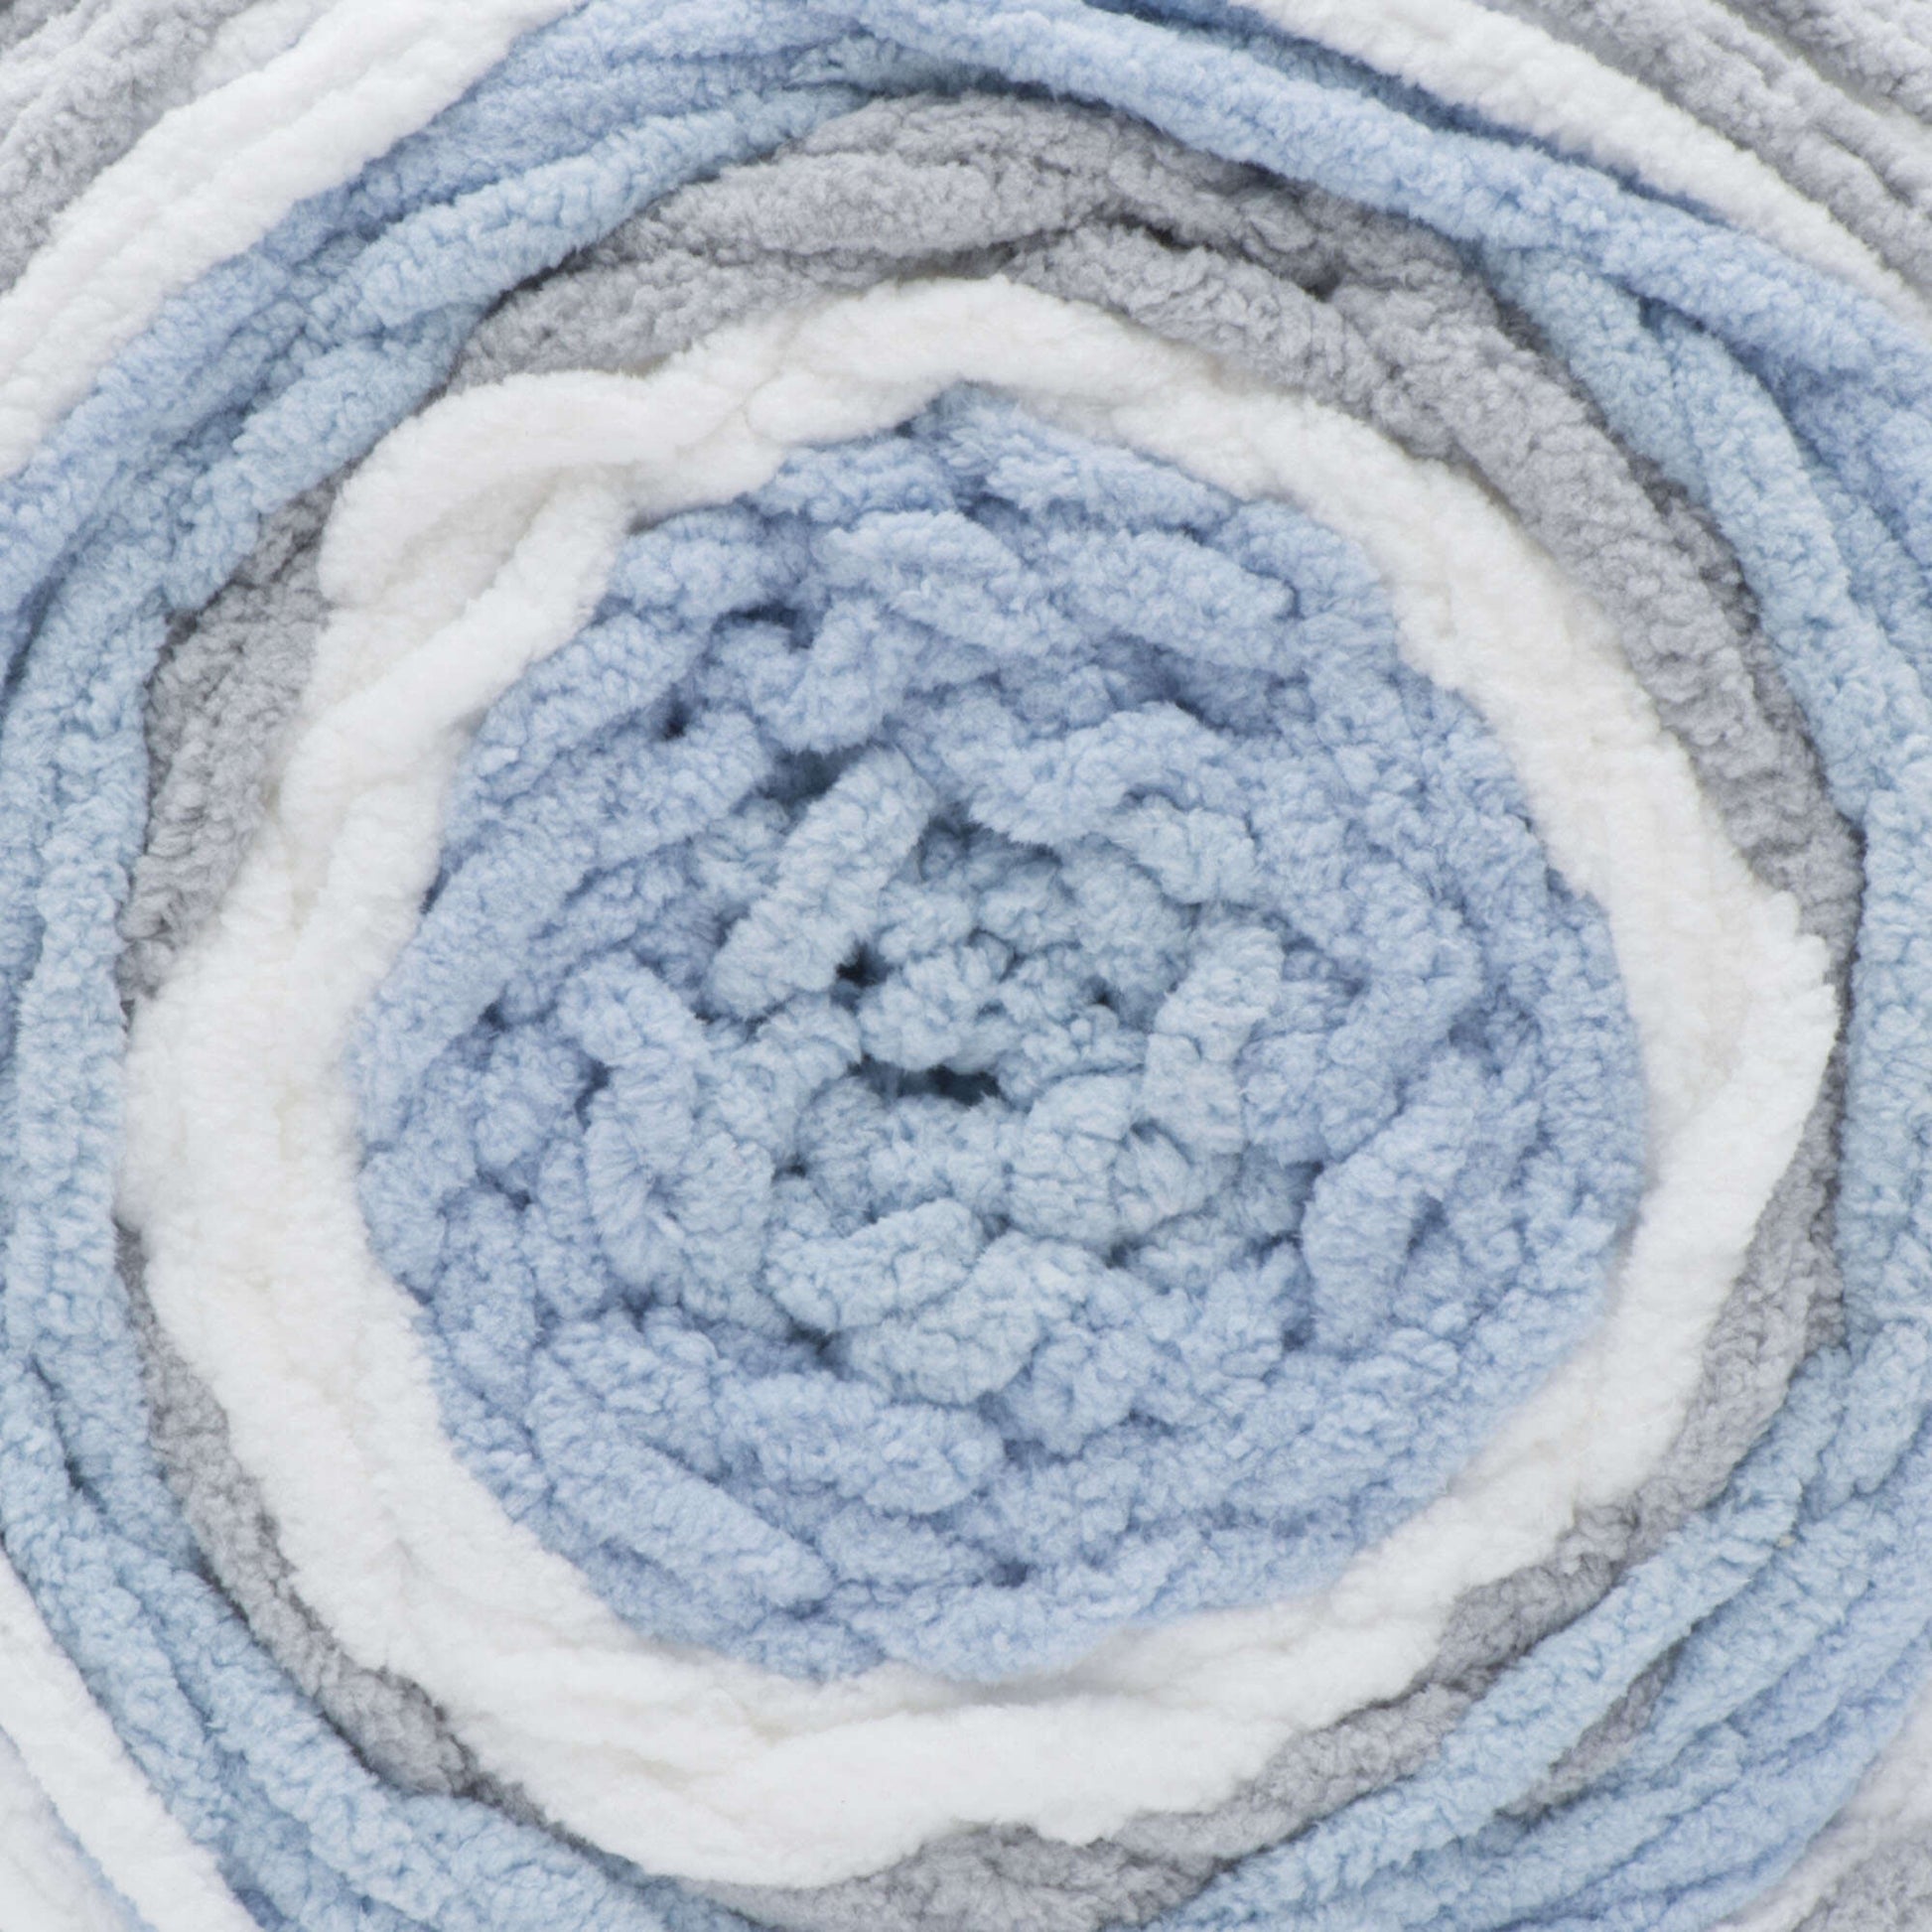 Bernat Baby Blanket Stripes Yarn-Violets, 1 count - Kroger